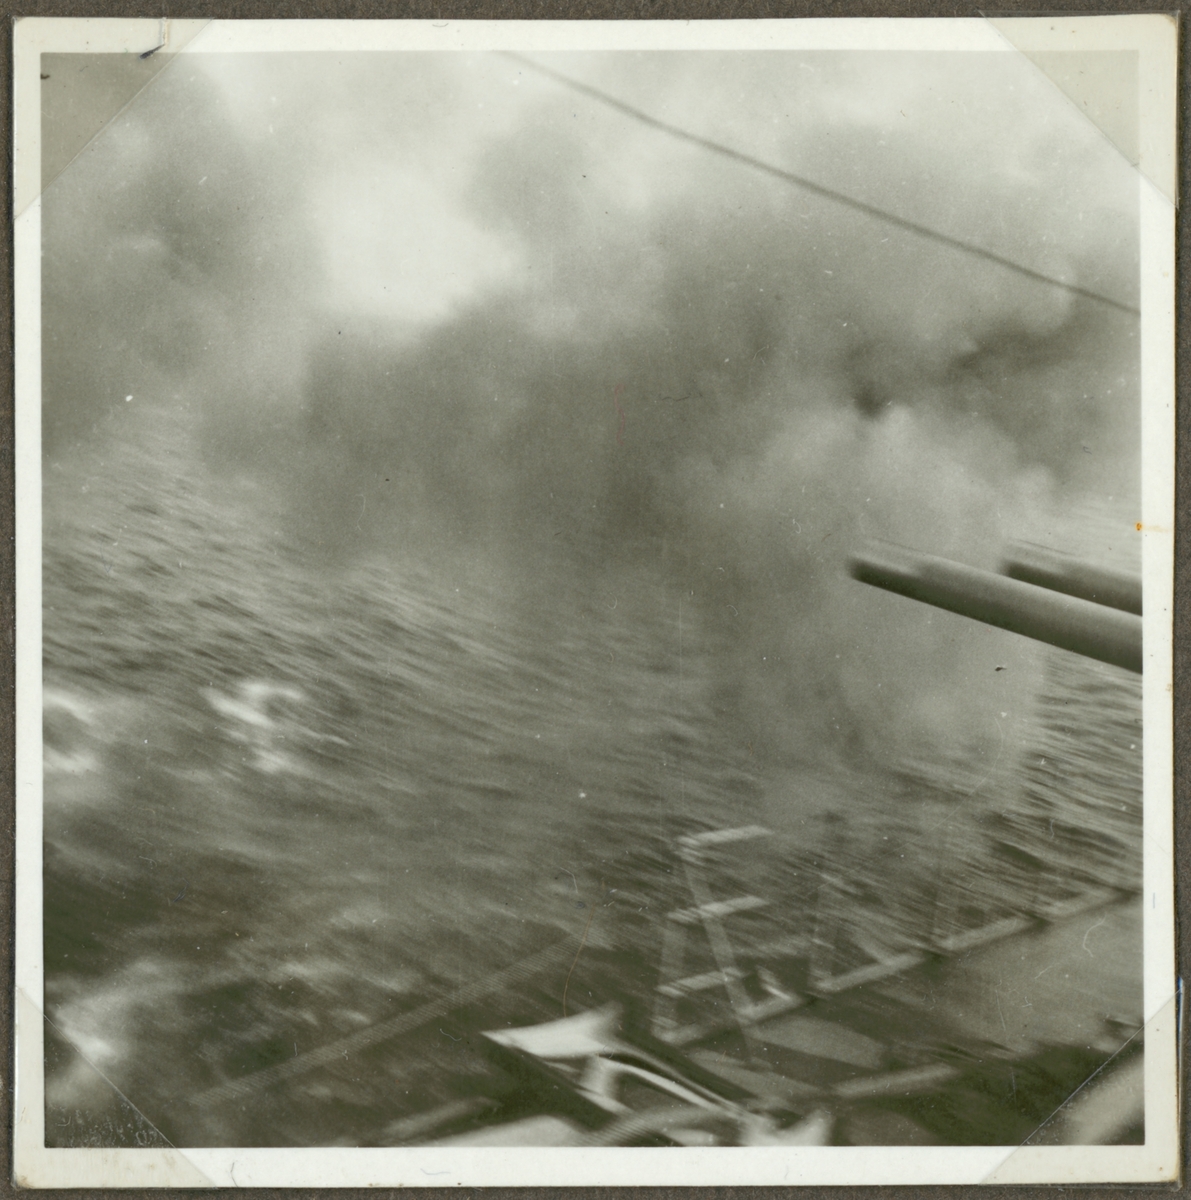 Denna oskarpa fotografi visar kanoner på ett örlogsfartyg som precist har avlossats.